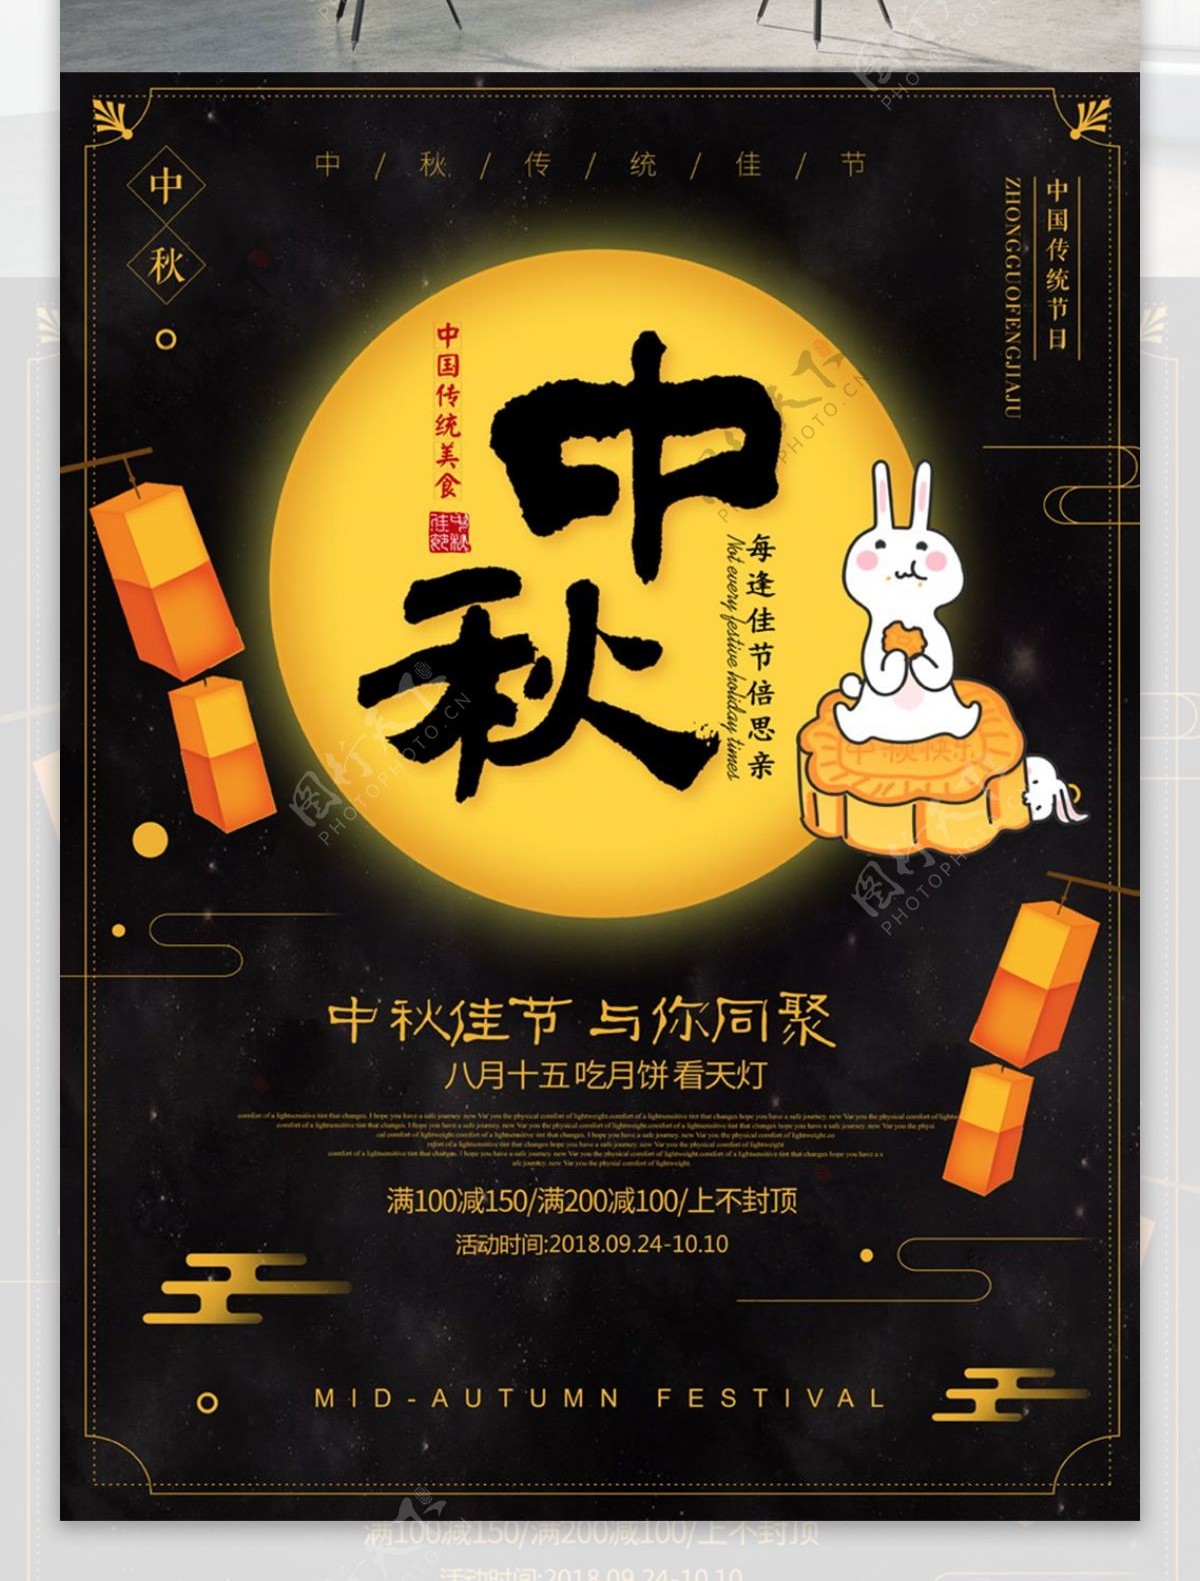 中国风清新中秋节团圆月饼宣传海报